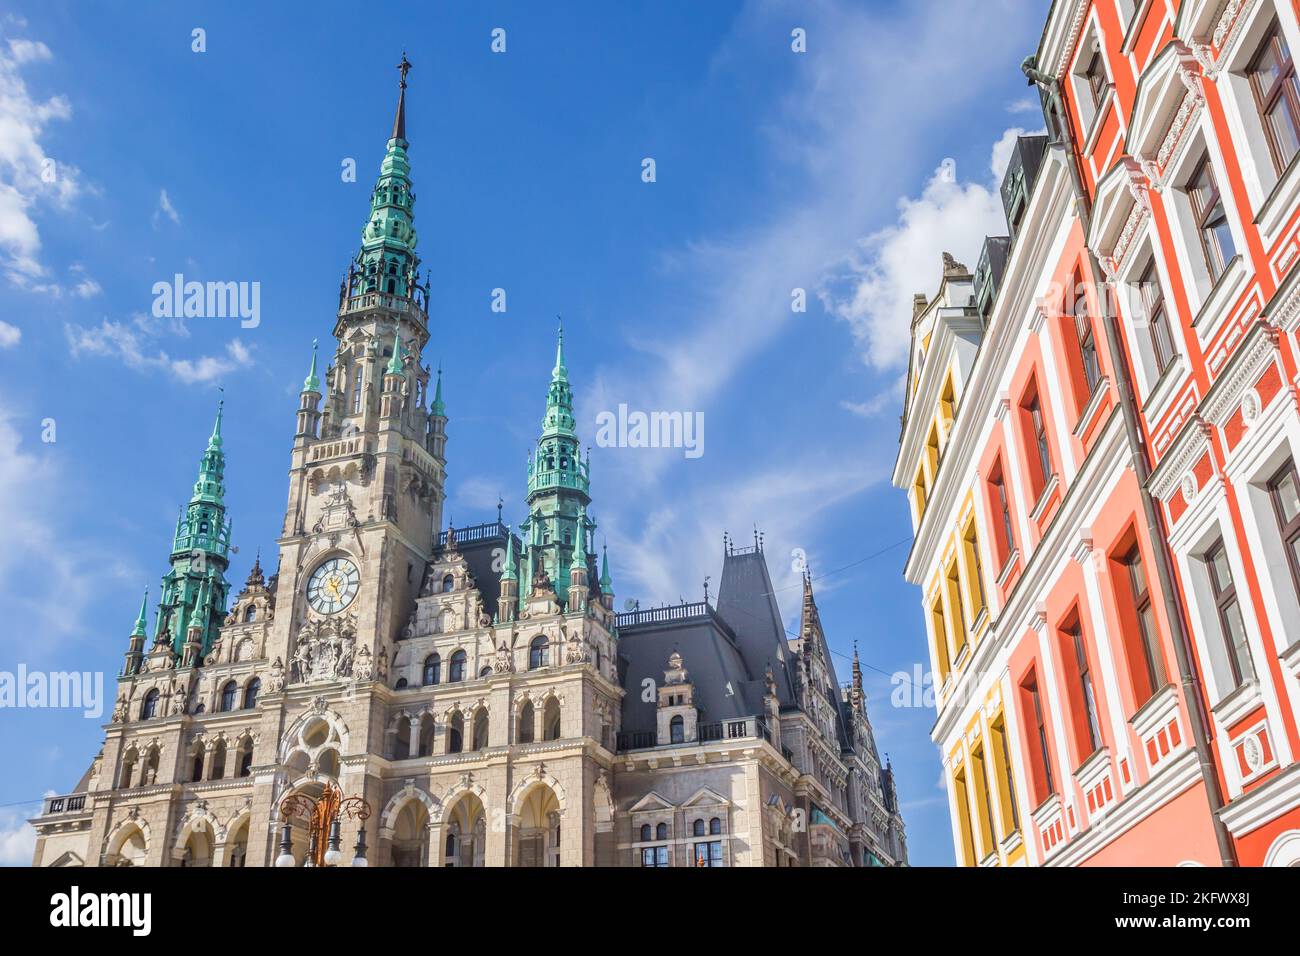 Maisons colorées et hôtel de ville historique de Liberec, République tchèque Banque D'Images